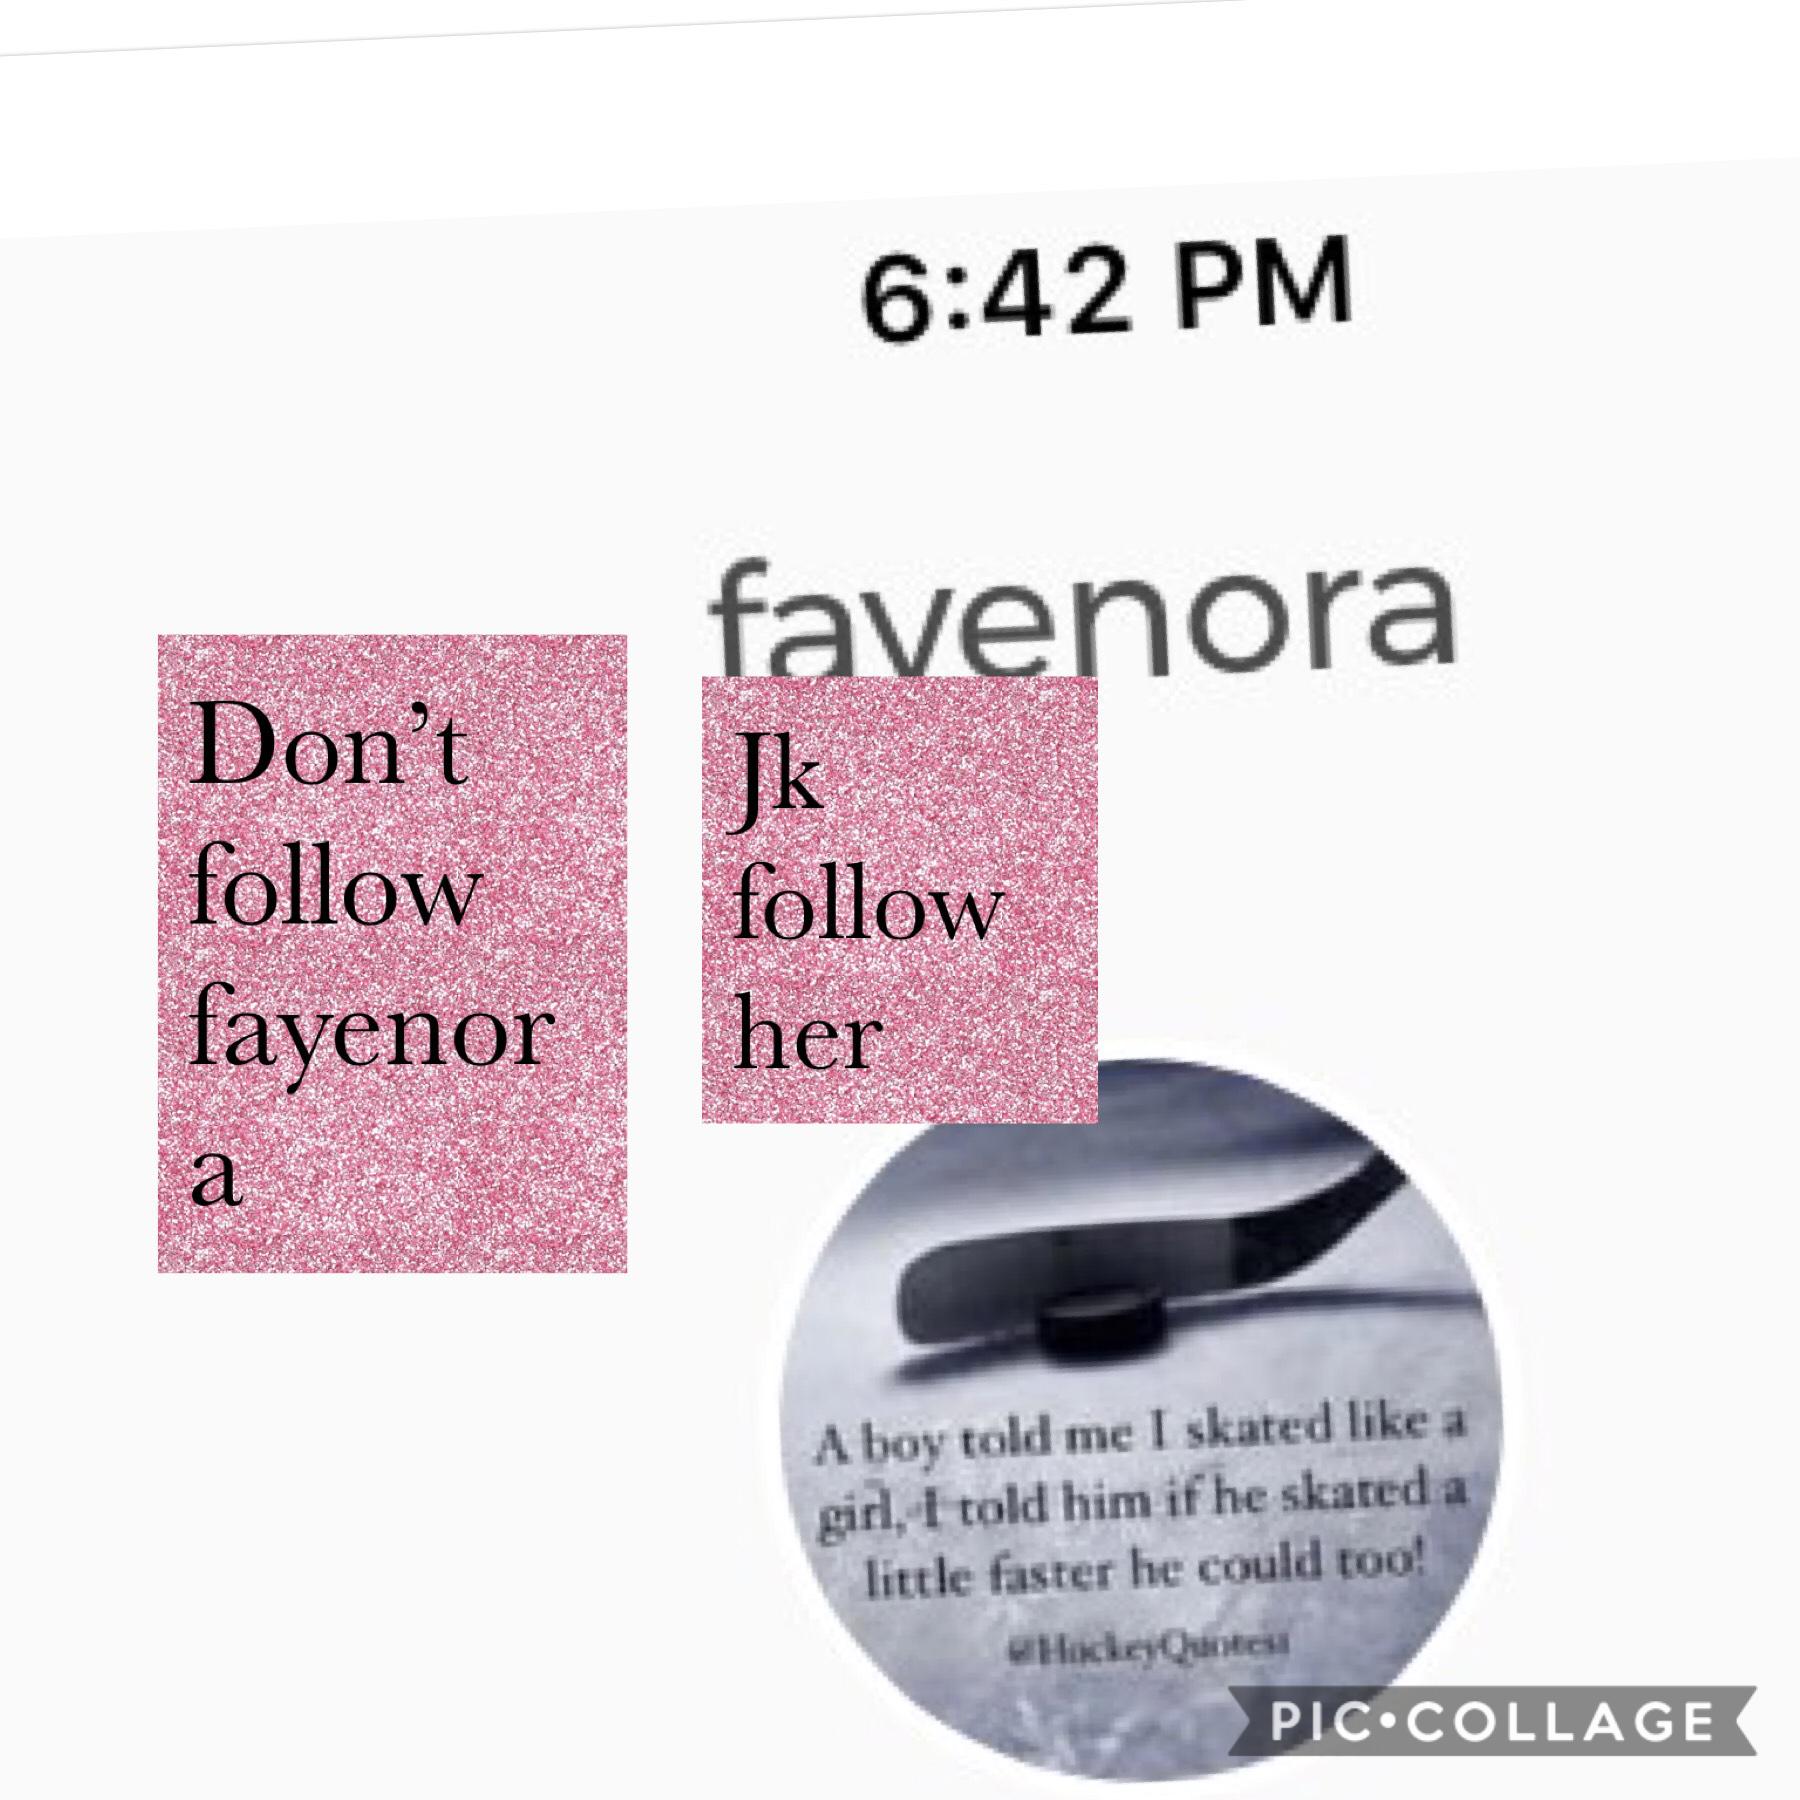 Make sure to follow fayenora